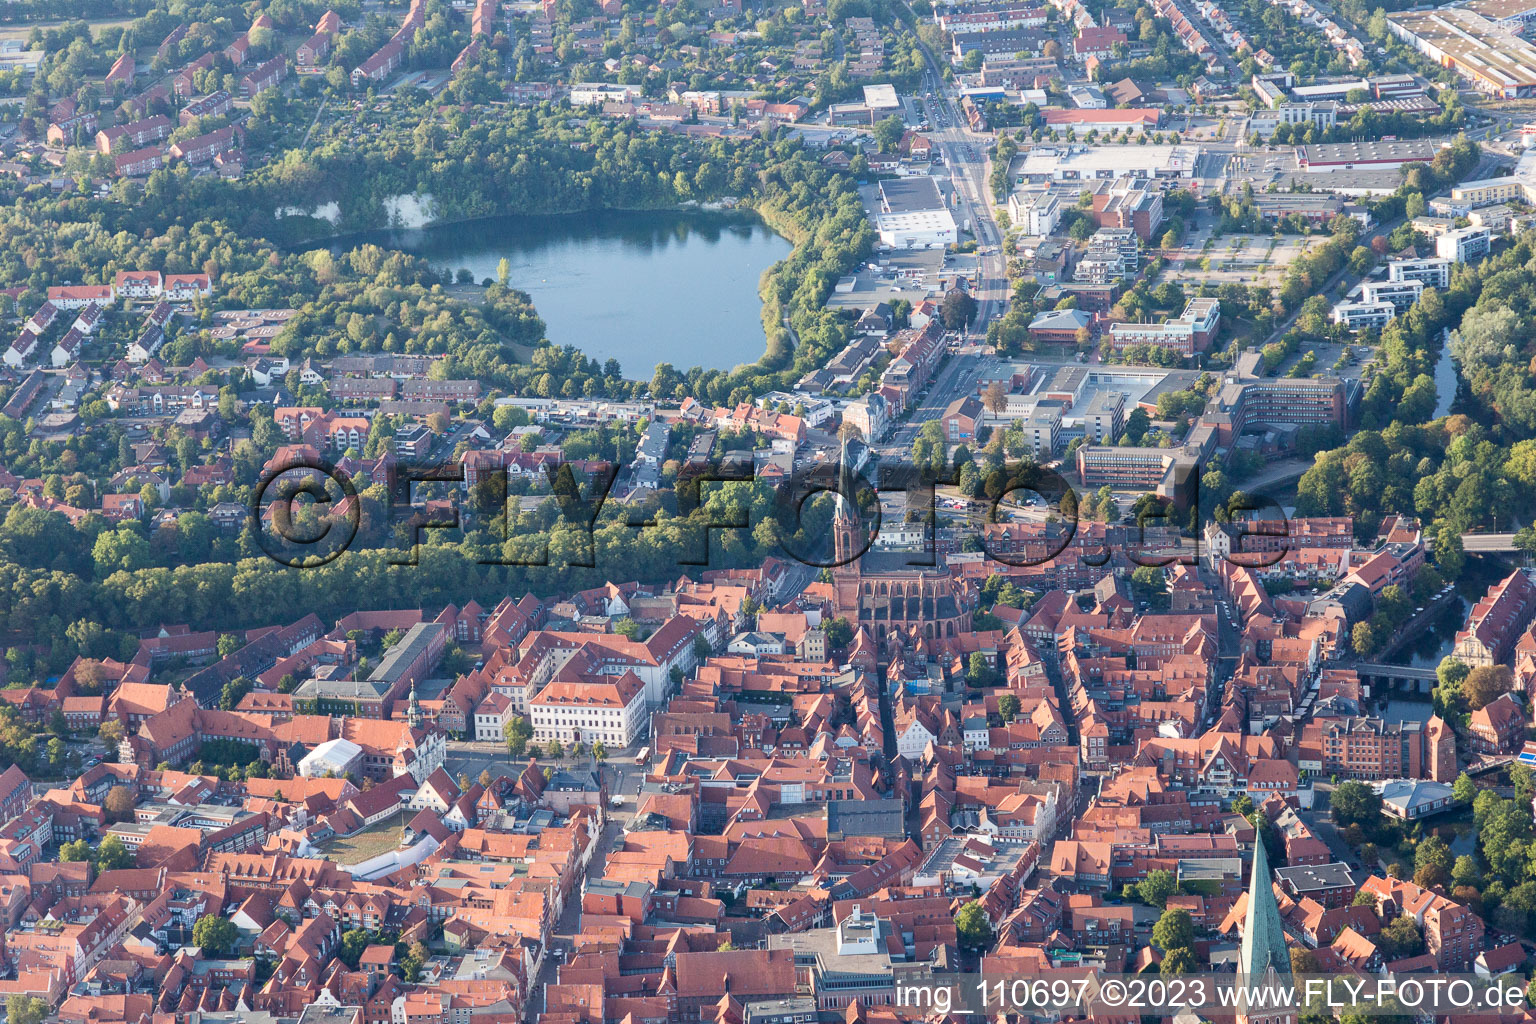 Altstadtbereich und Innenstadtzentrum in Lüneburg im Bundesland Niedersachsen, Deutschland vom Flugzeug aus